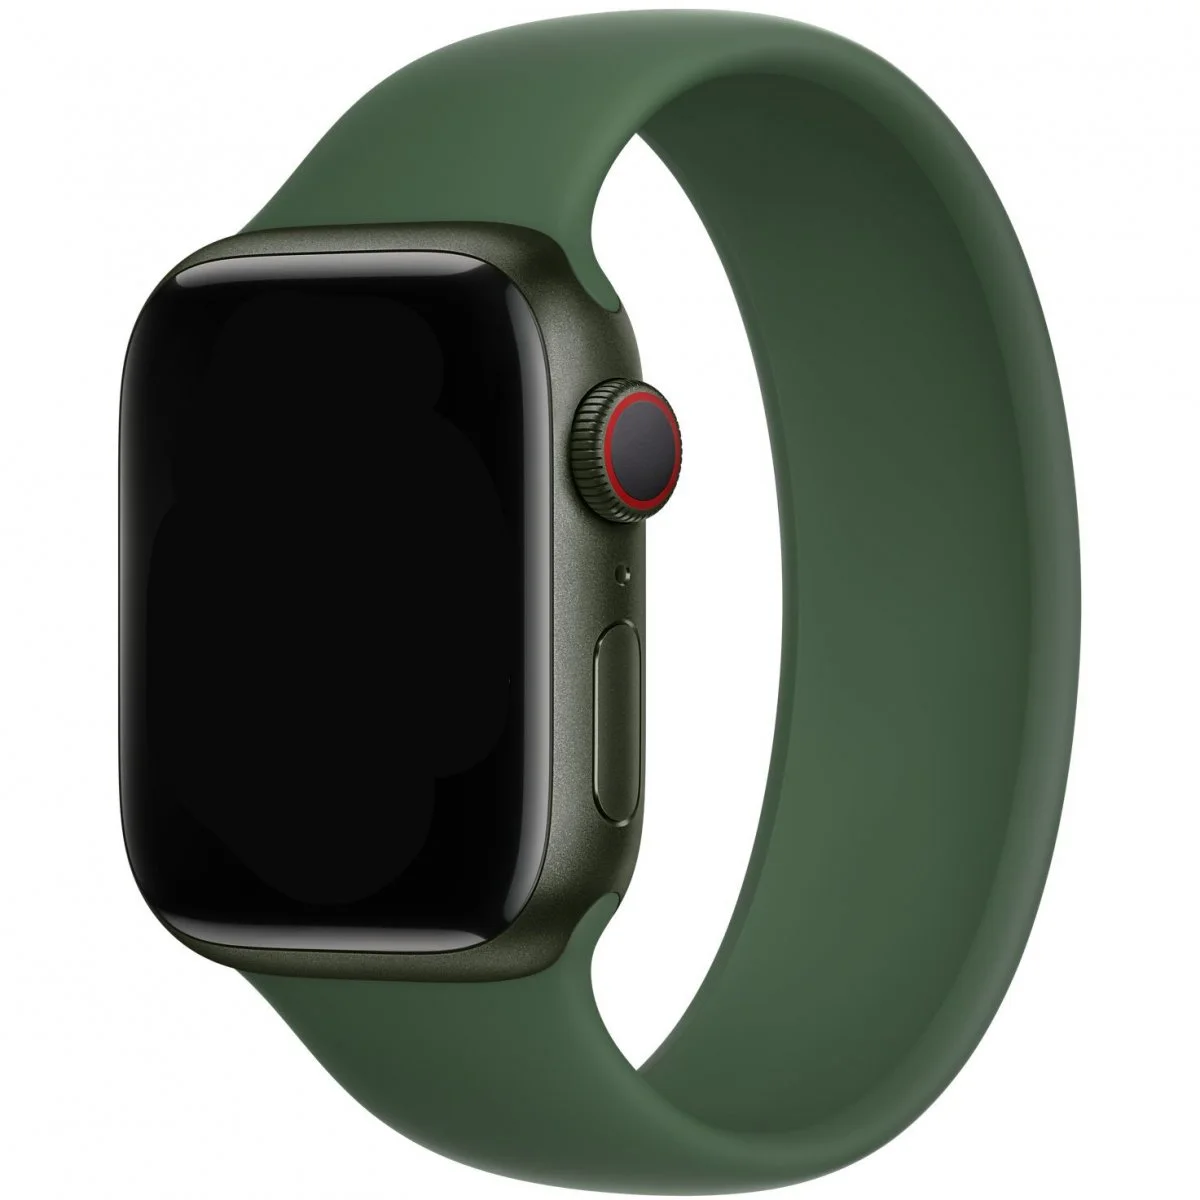 Řemínek iMore Solo Loop Apple Watch Series 1/2/3 42mm - Jetelově zelená (L)